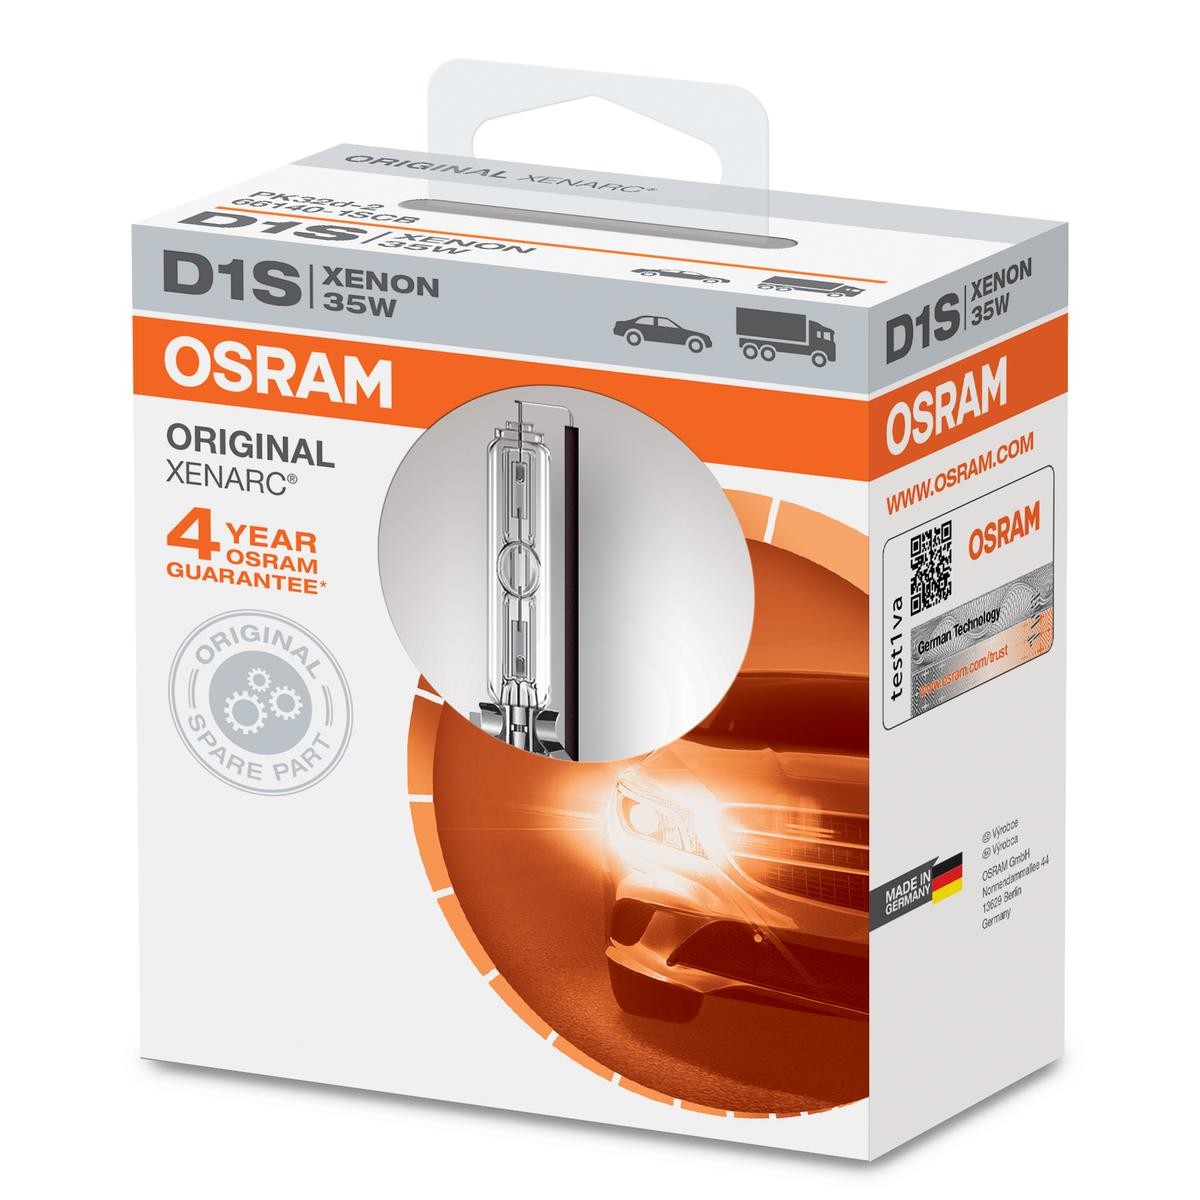 Comprare D1S OSRAM XENARC ORIGINAL D1S (Lampada a scarico di gas) 85V 35W4300K Xeno Lampadina, Faro di profondità 66140 poco costoso